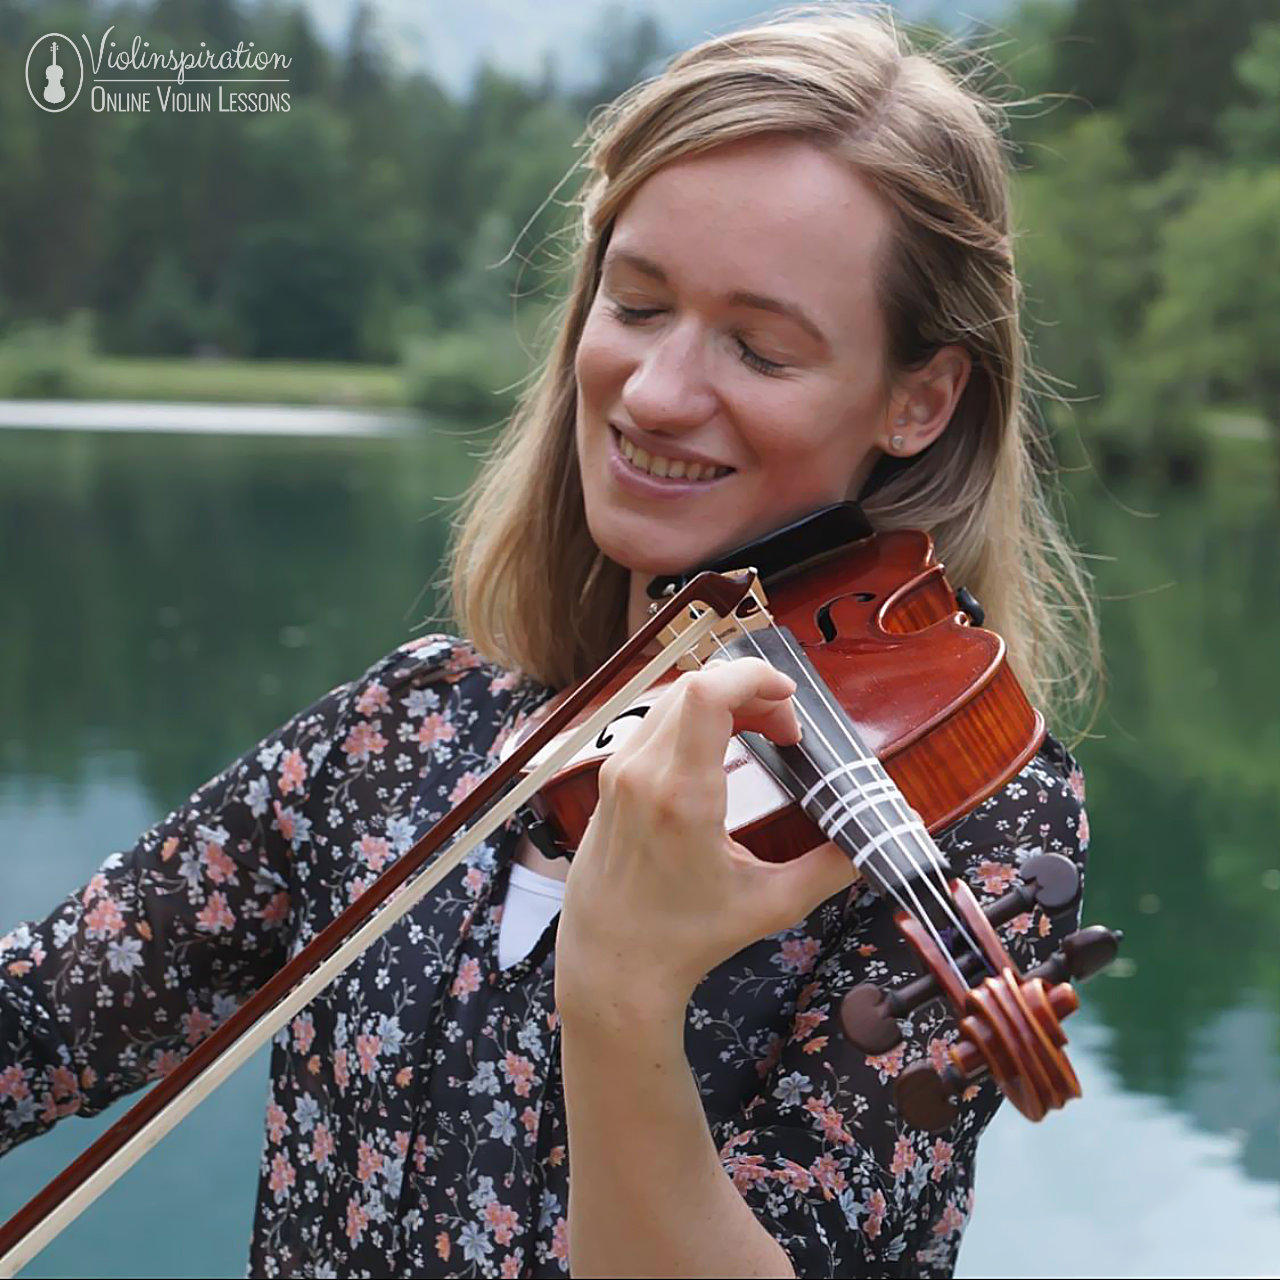 Violin Legato - Julia playing legato